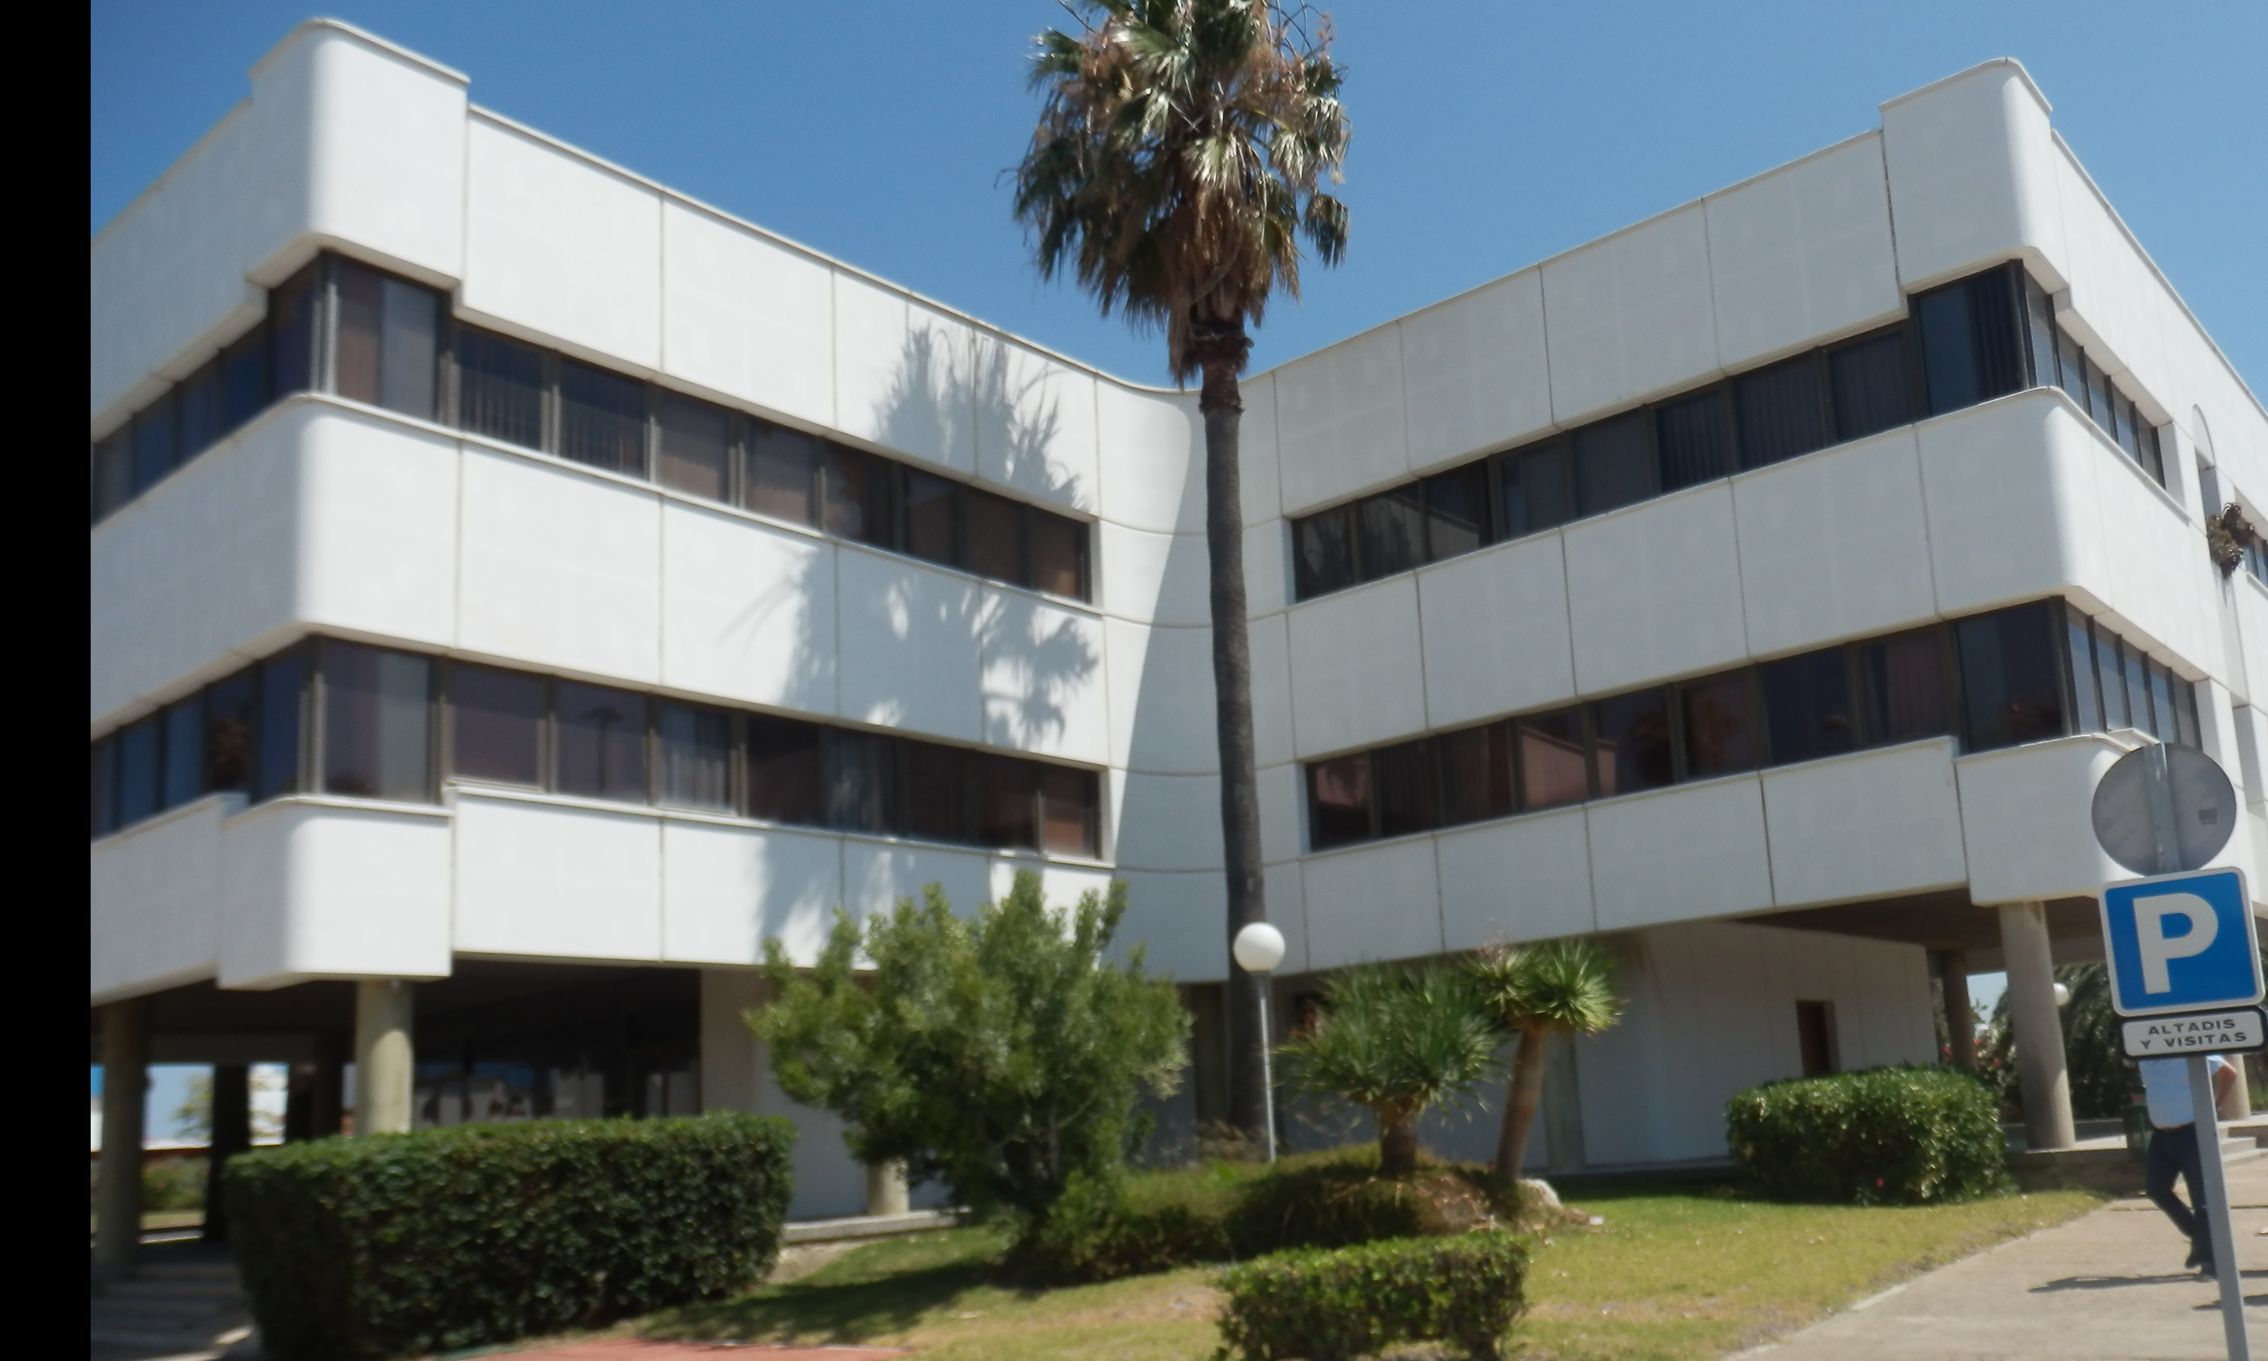 Adjudicación del edificio en cruz ubicado en Altadis que ocupará la Guardia Civil en Cádiz.